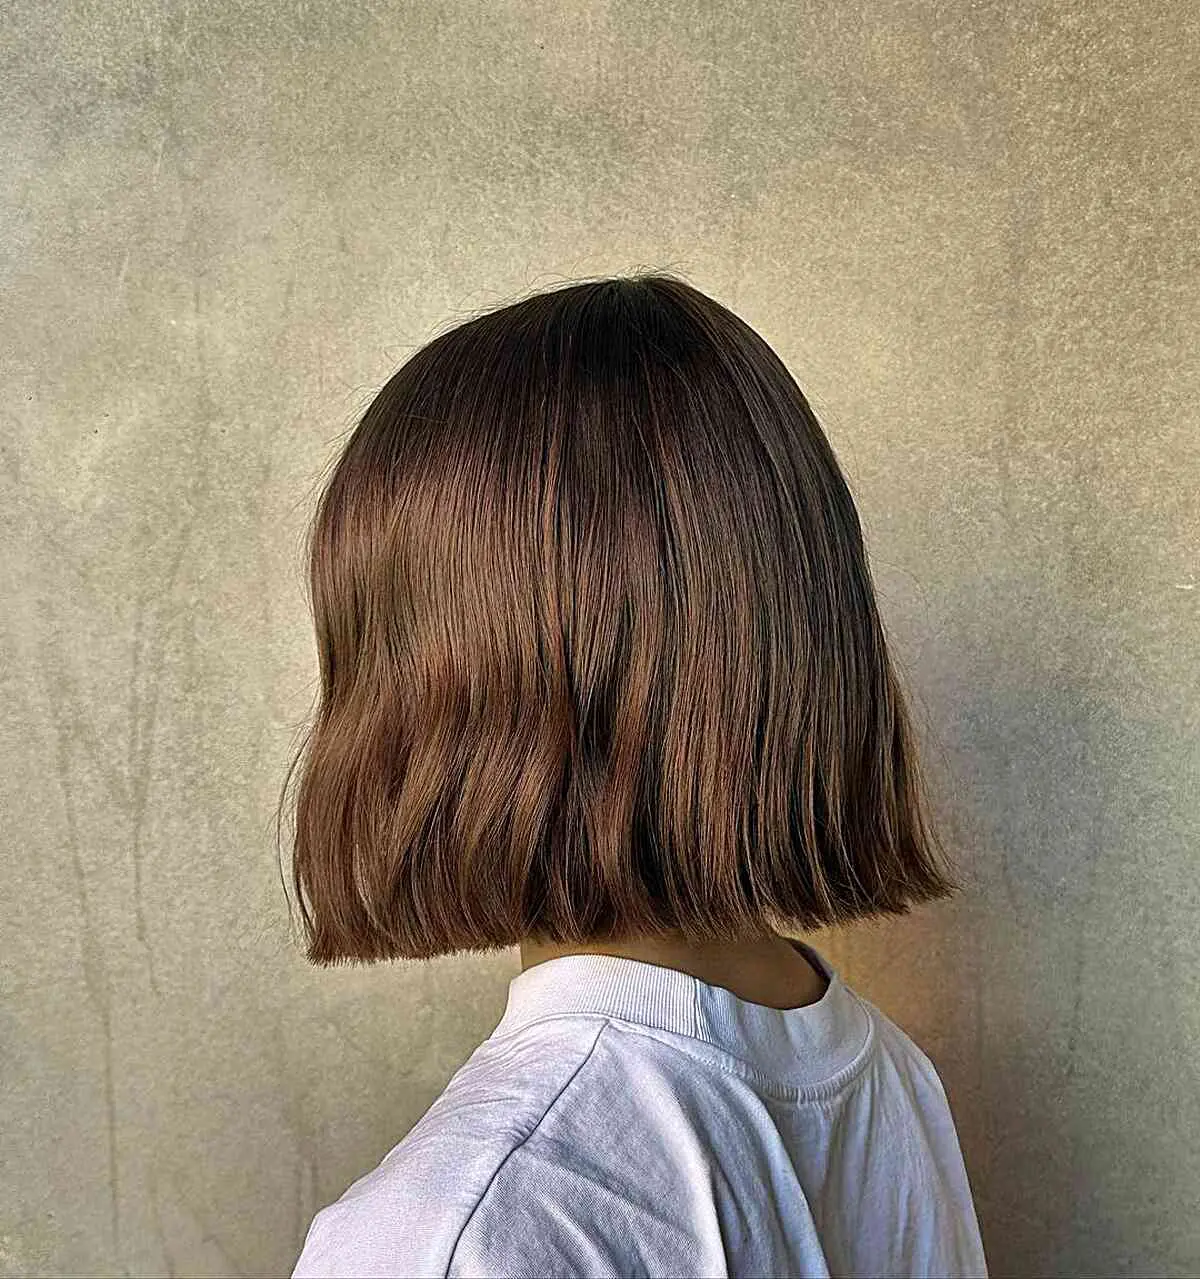 Девушка с текстурированной стрижкой бокс боб на натуральных волосах